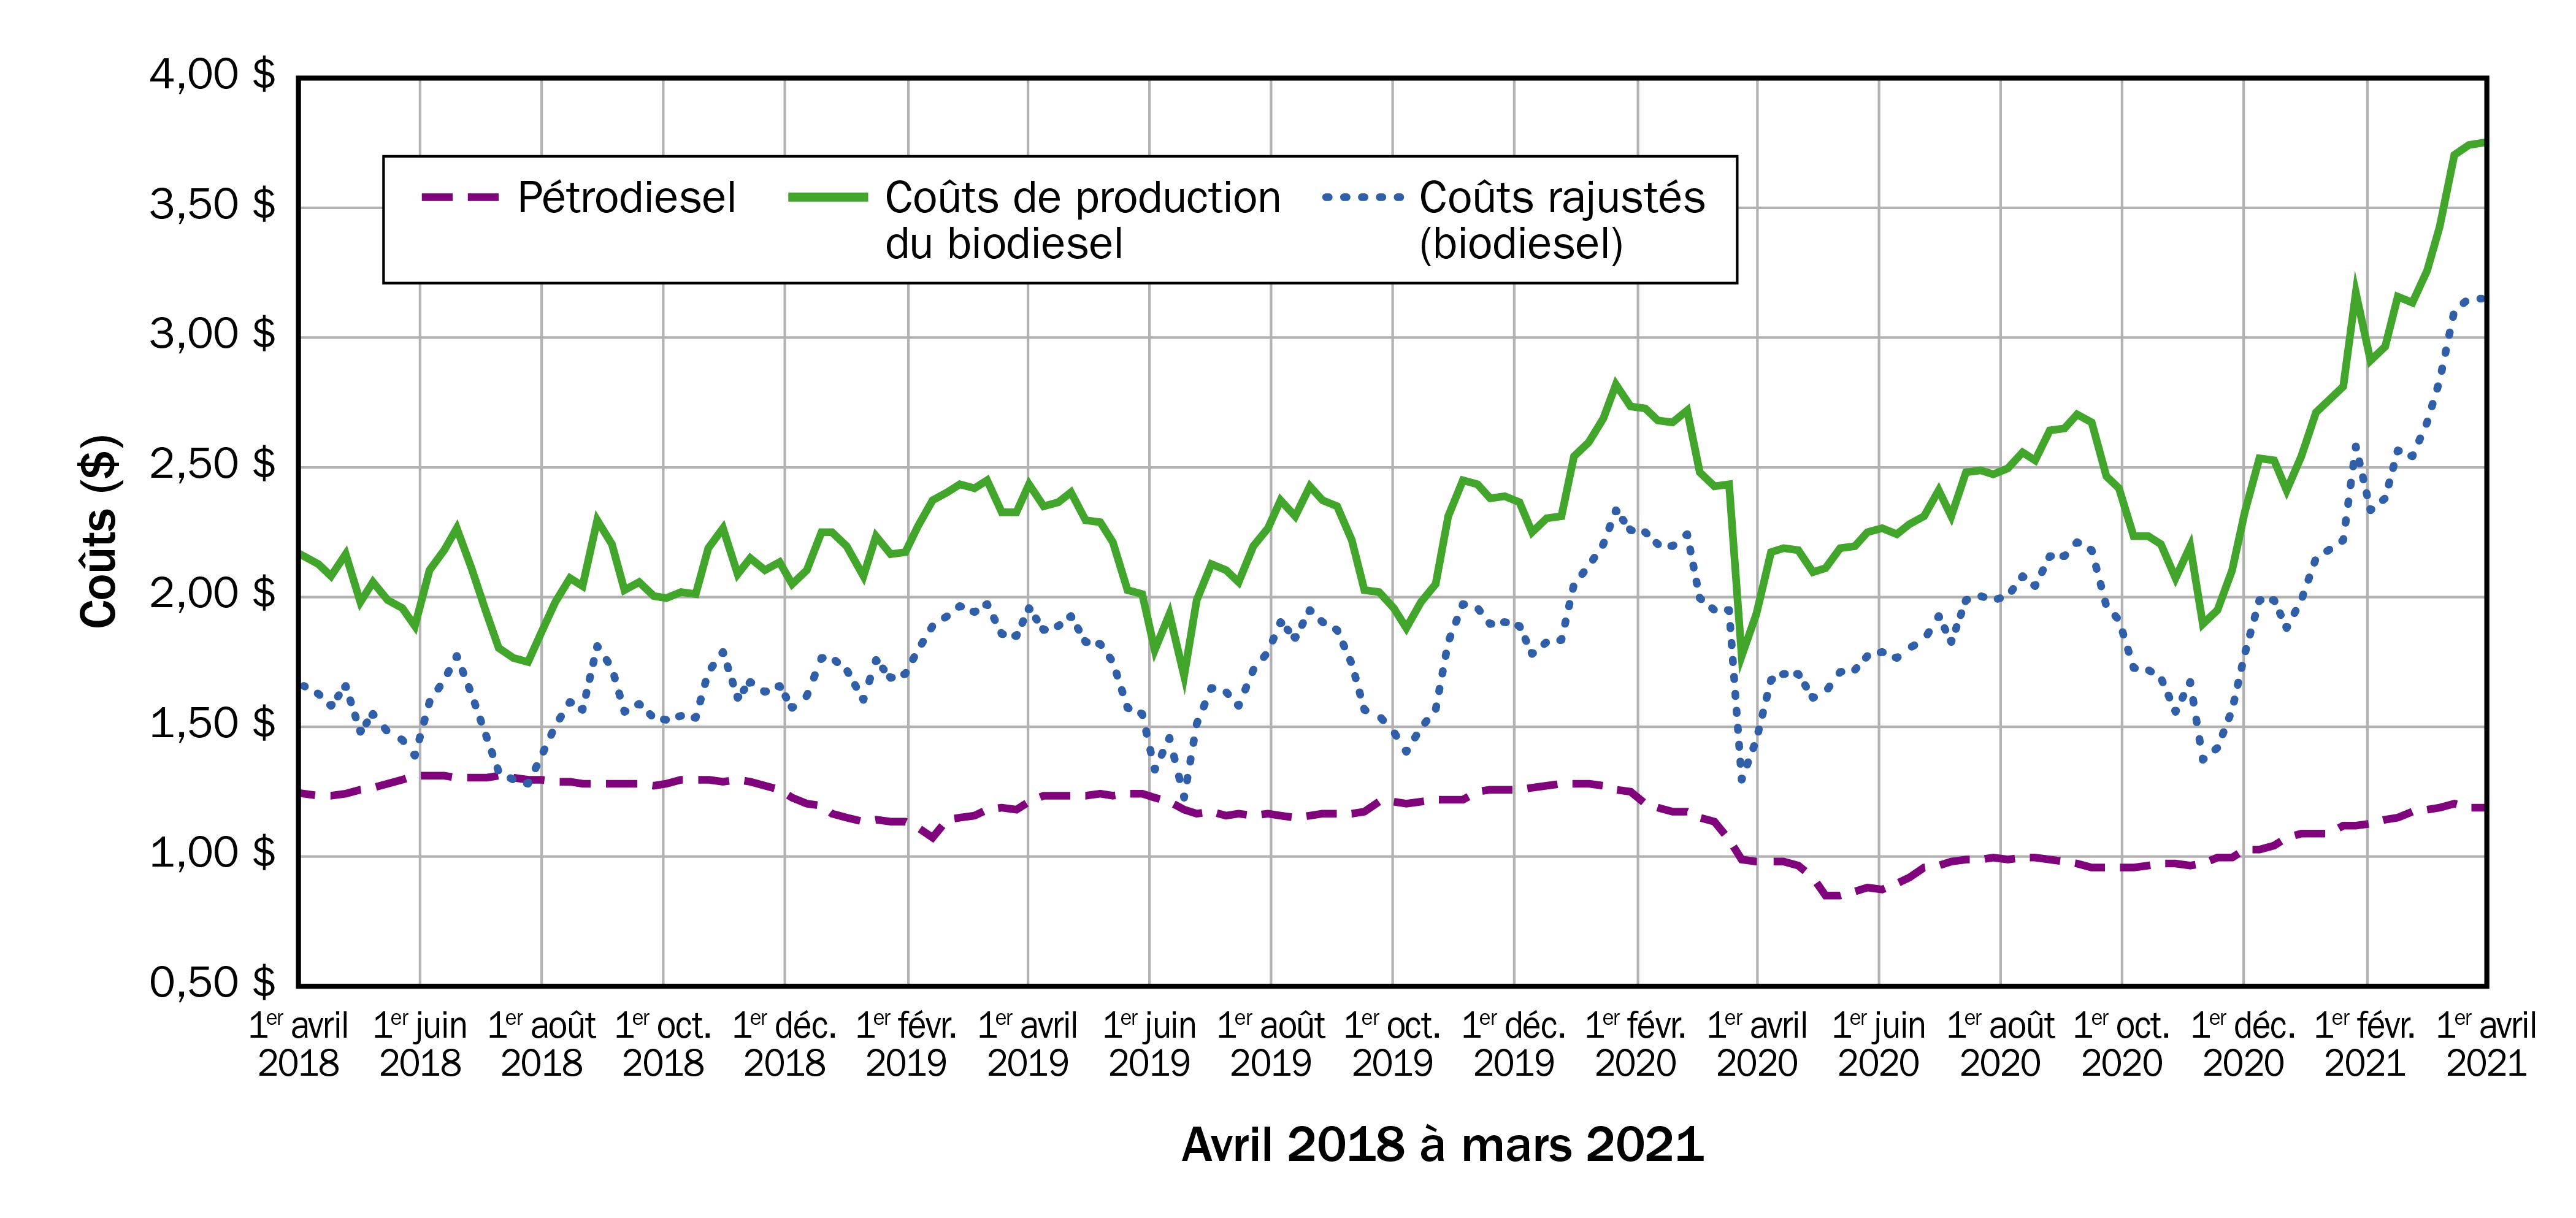 Un graphique linéaire avec le coût ($/L) en ordonnée et le temps (avril 2018 à mars 2021) en abscisse, qui compare le coût d’opportunité associé à la production de biodiesel à la ferme au lieu de la vente de soya sur le marché des matières premières. Deux scénarios d’hypothèses sont présentés. Dans les deux, les courbes montrent que, malgré les fluctuations des valeurs au fil du temps, il était toujours moins cher d’acheter du pétrodiesel que de produire du biodiesel à partir de graines de soya.